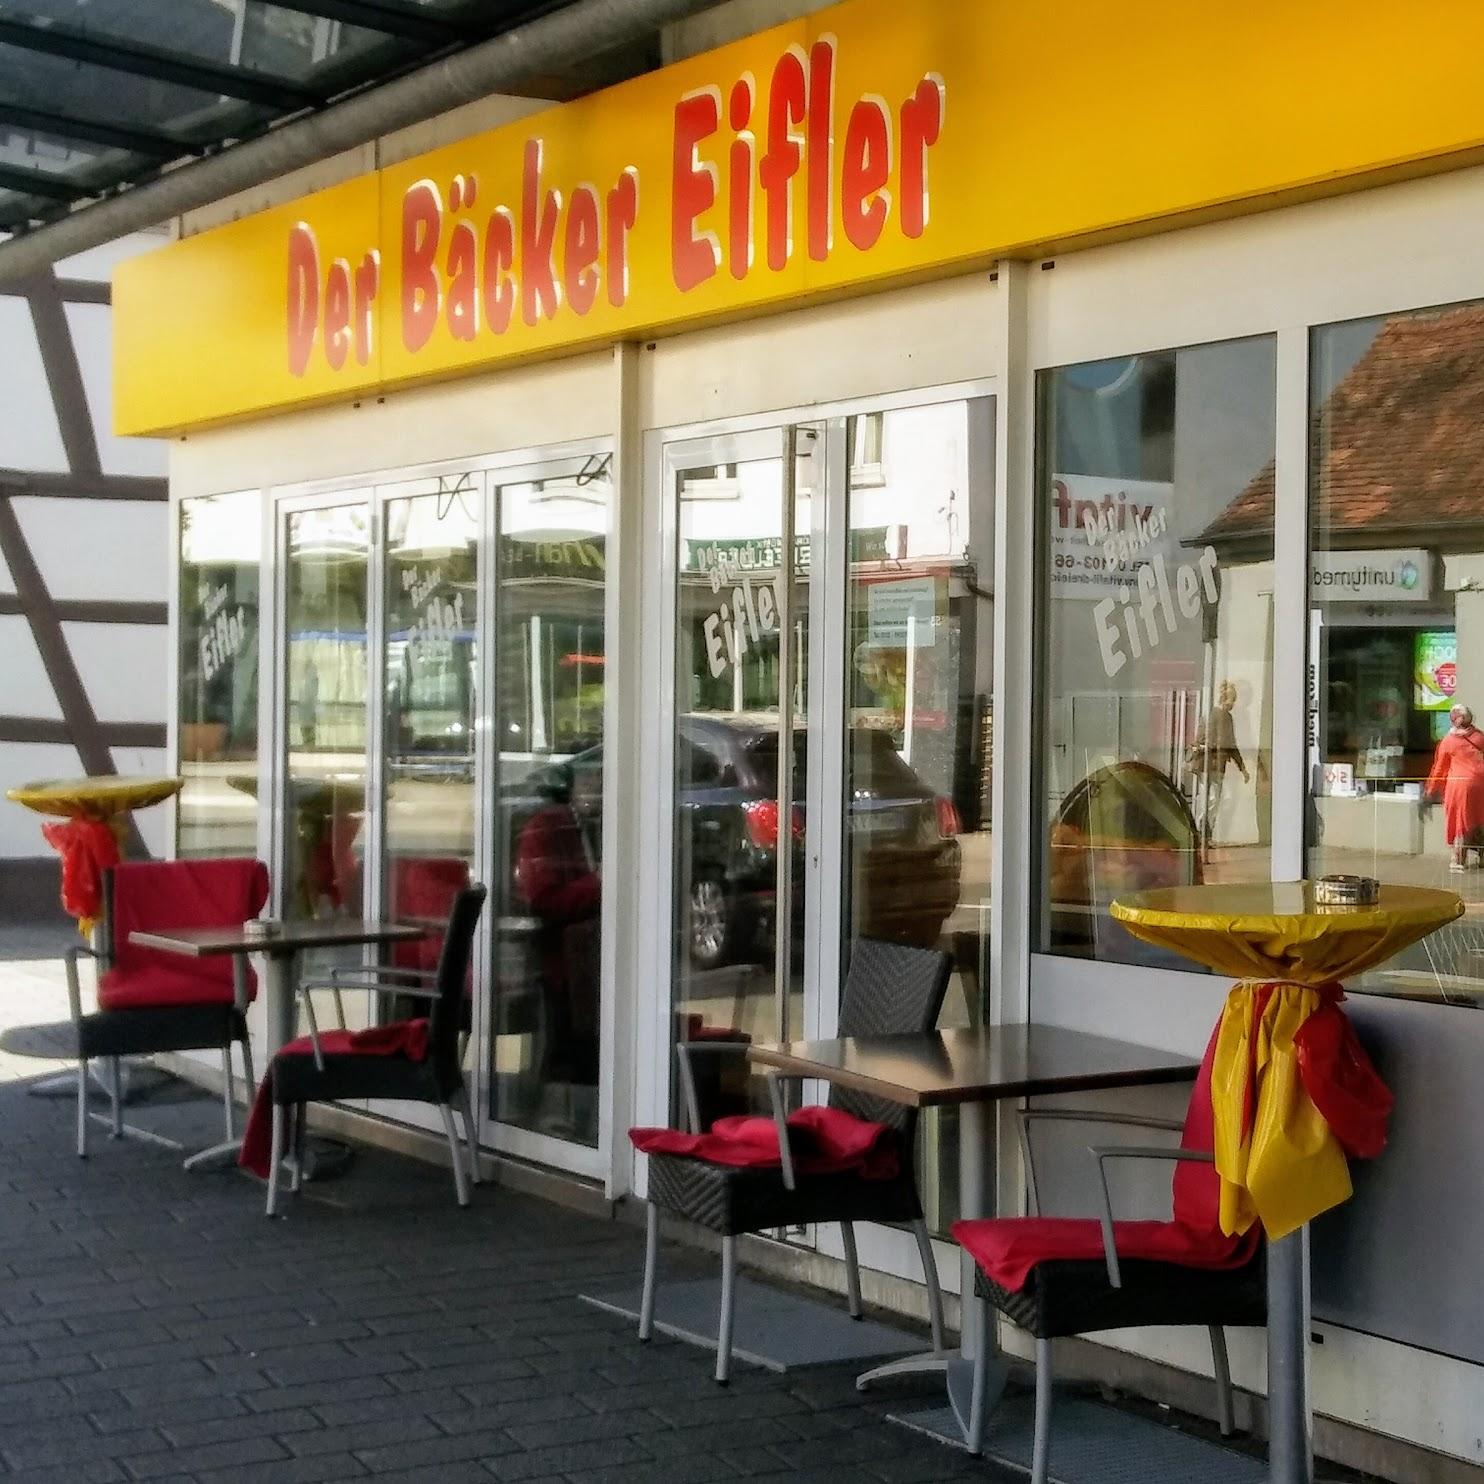 Restaurant "Der Bäcker Eifler GmbH" in Dreieich